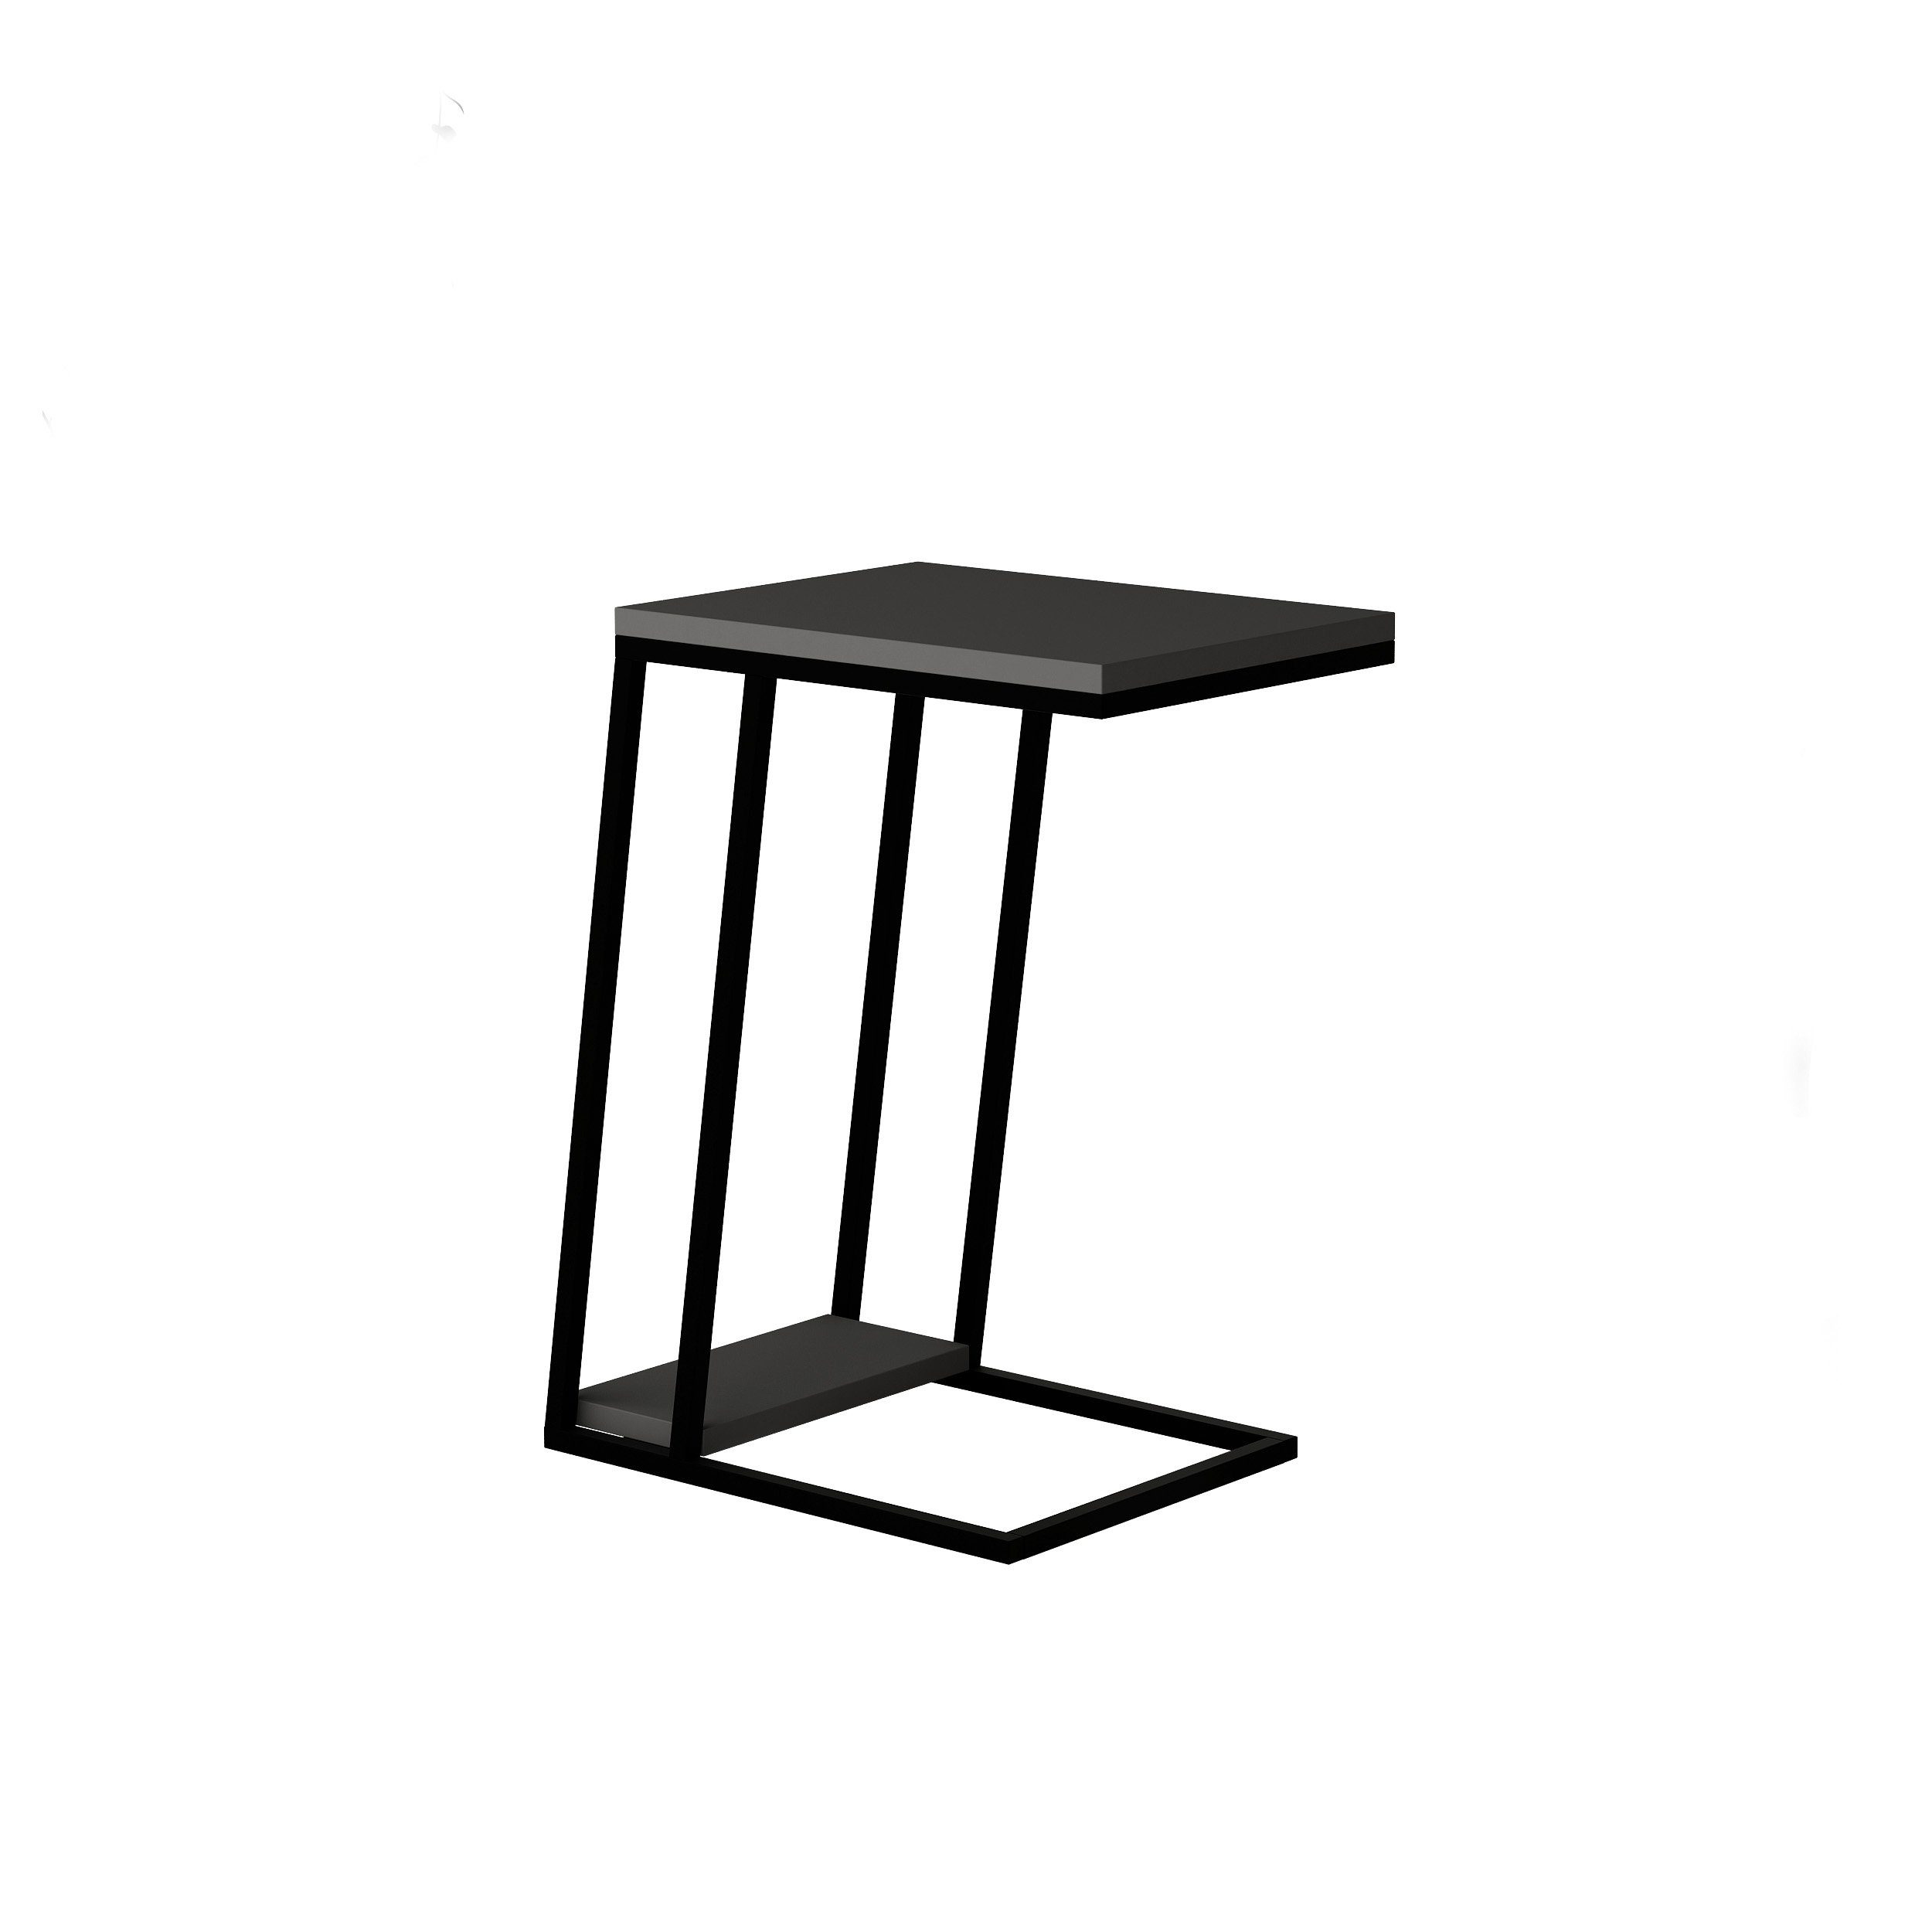 Decortie Beistelltisch Pal (1 Tisch), Modern C Form Beistelltisch,Mehrzweck mit Kreativität,30 x 40 x 57 cm Anthrazit